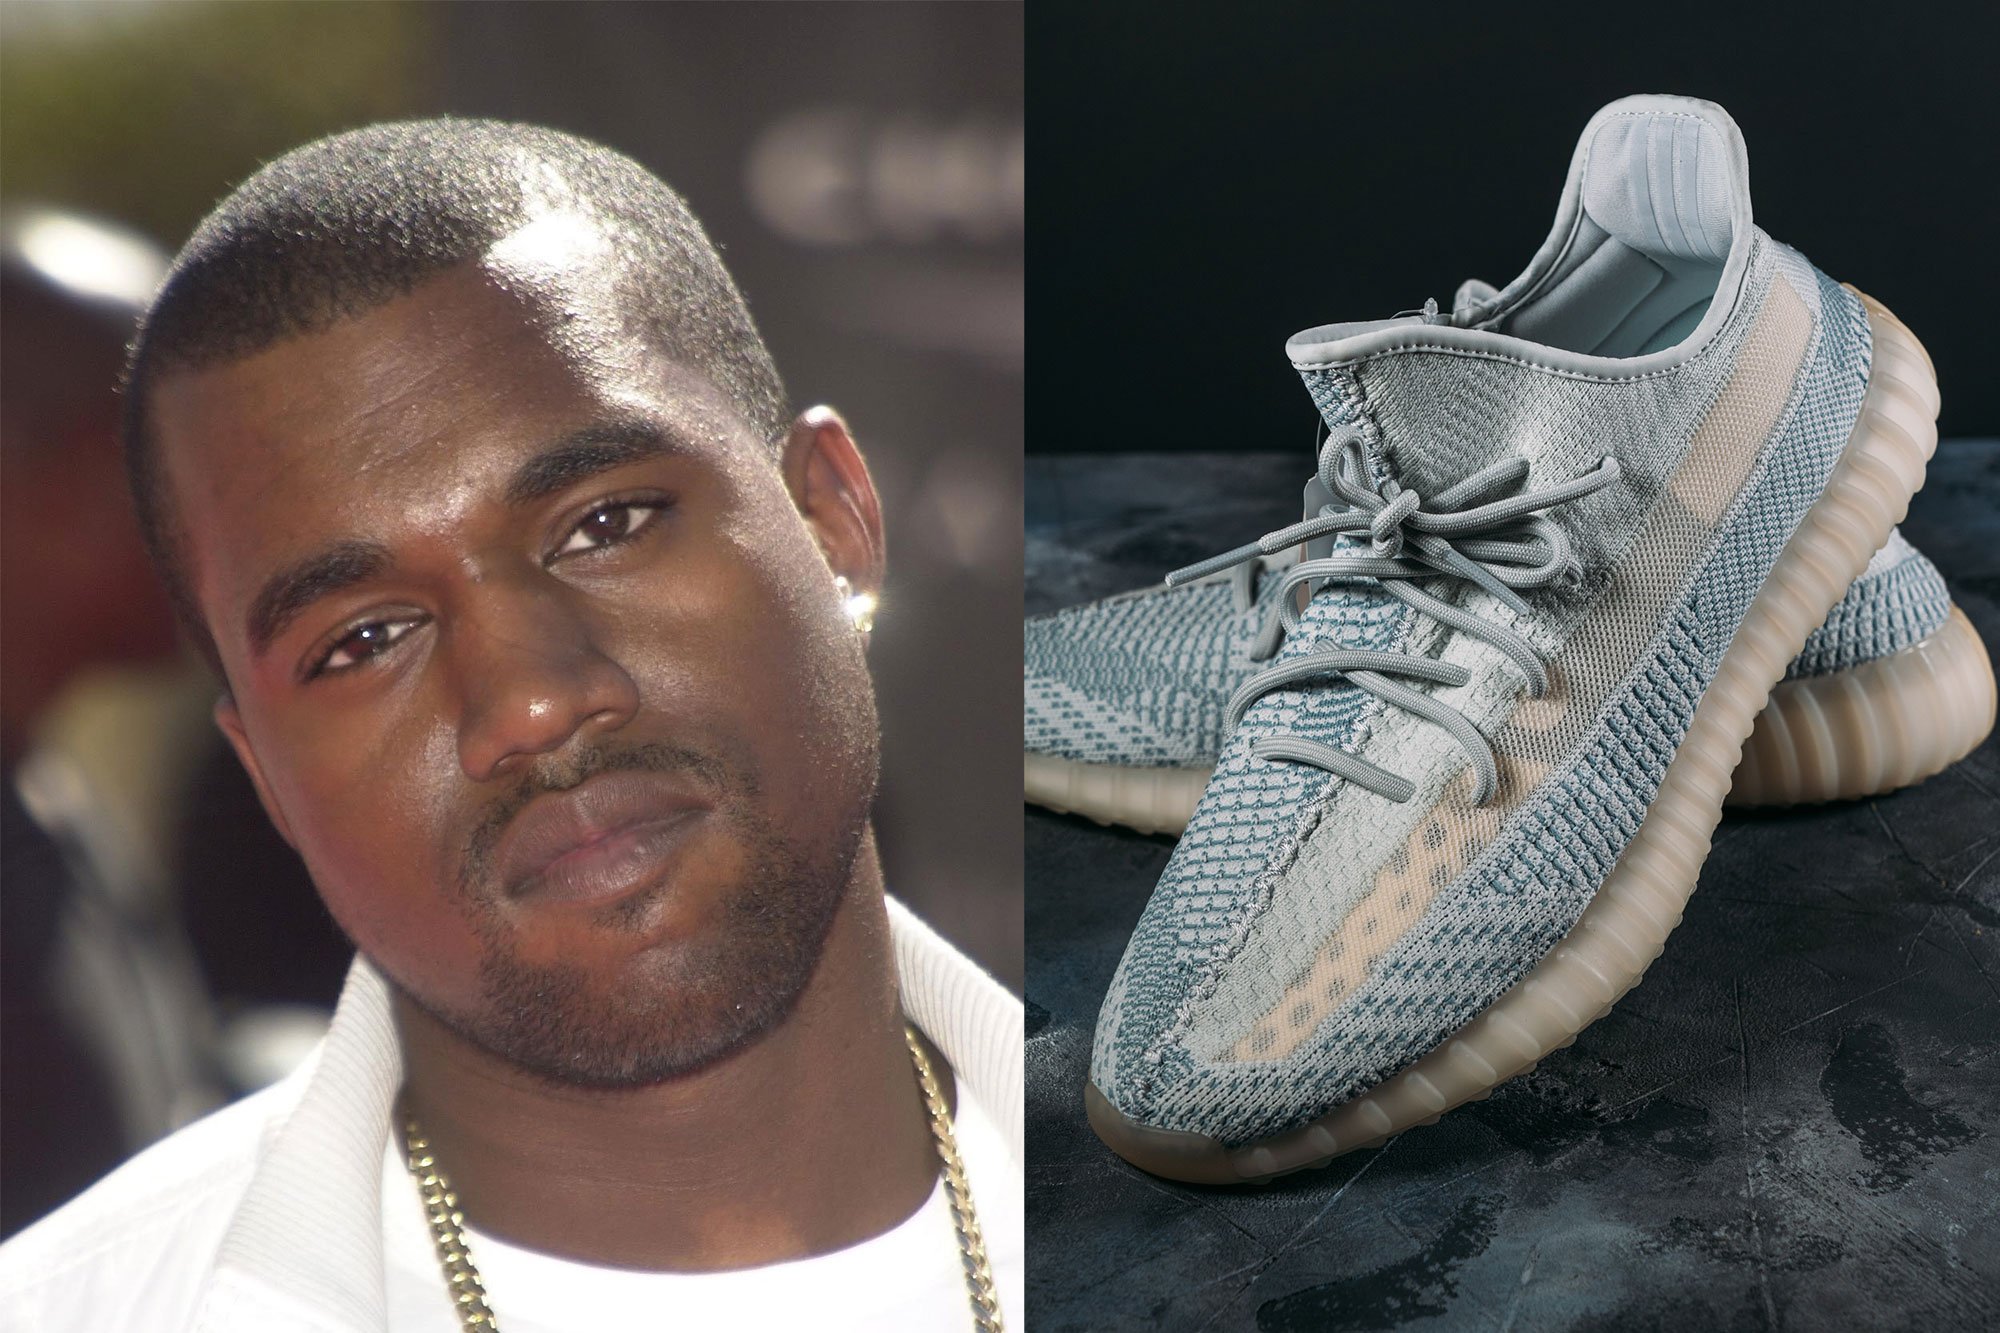 Adidas sí los tenis Yeezy de Kanye West pese a riesgo de crisis de imagen - Emprendedor